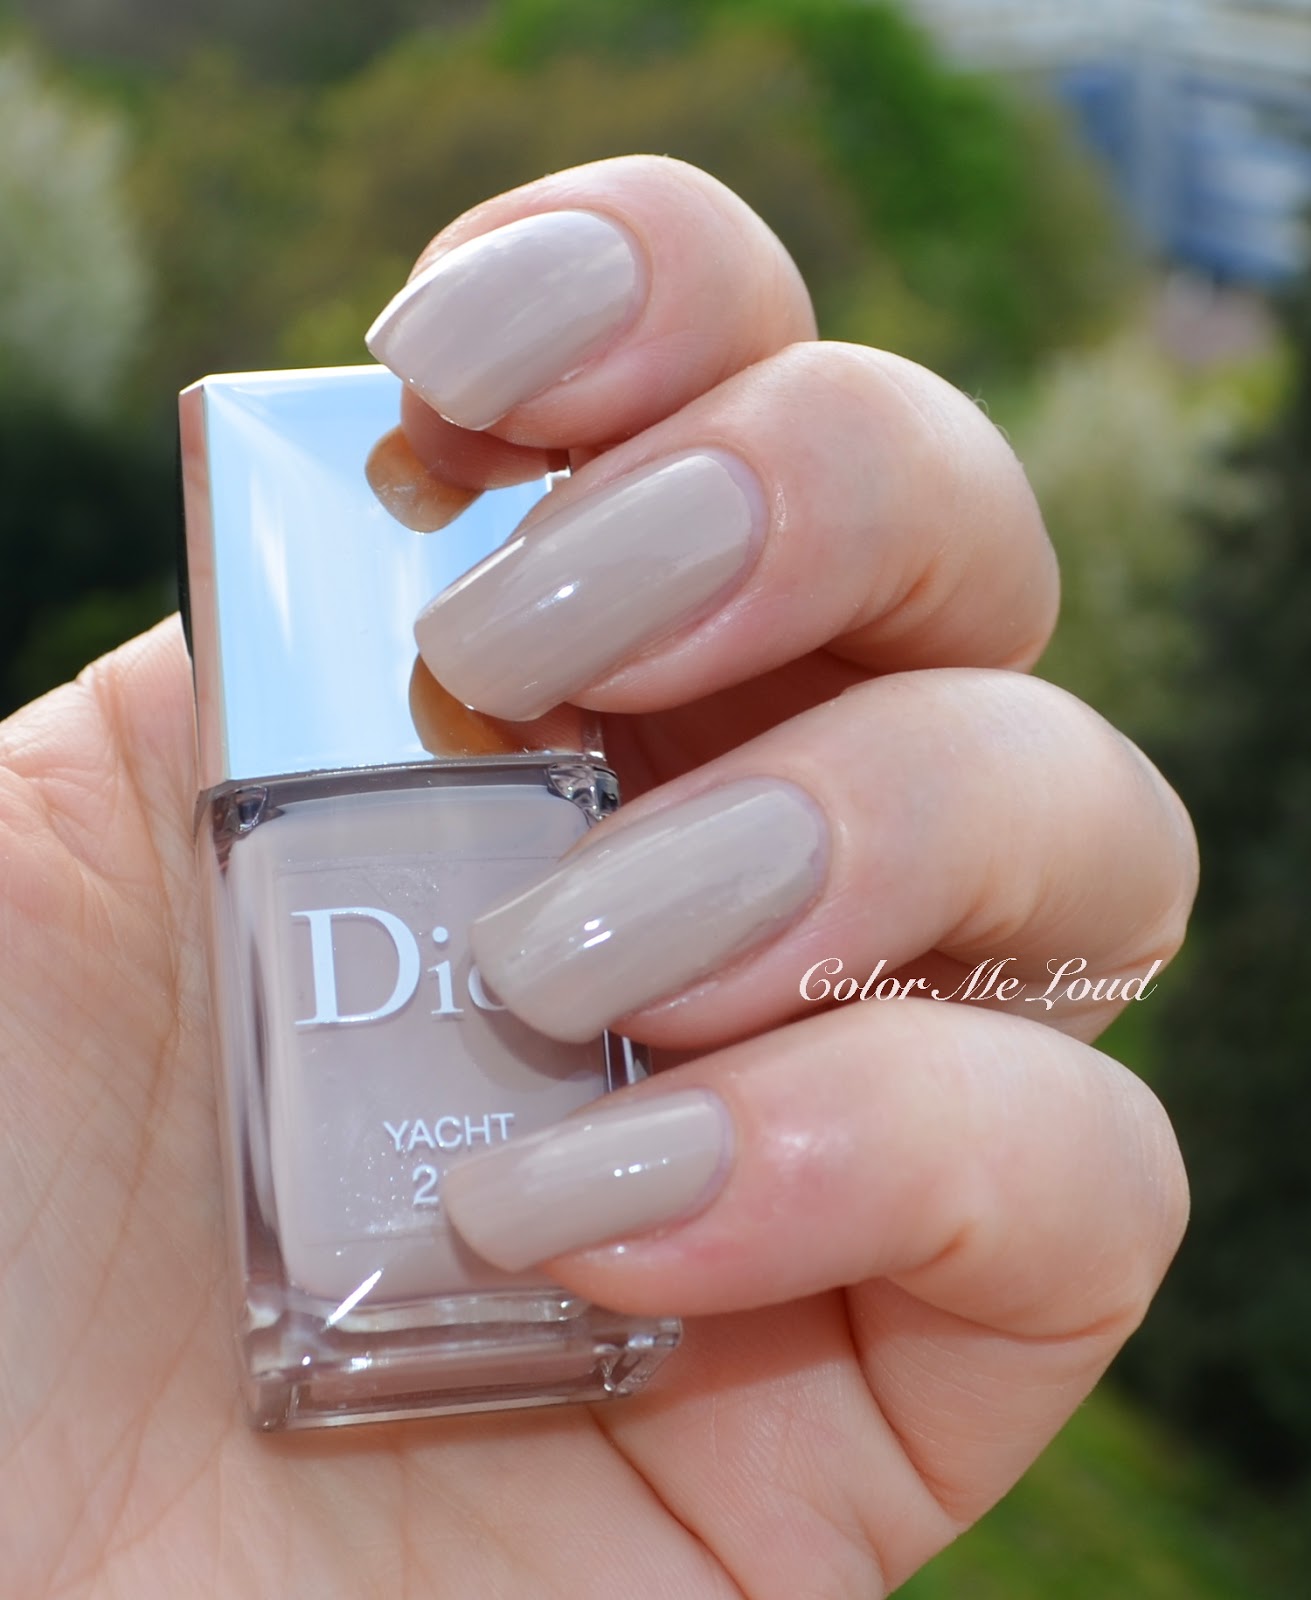 dior yacht nail polish